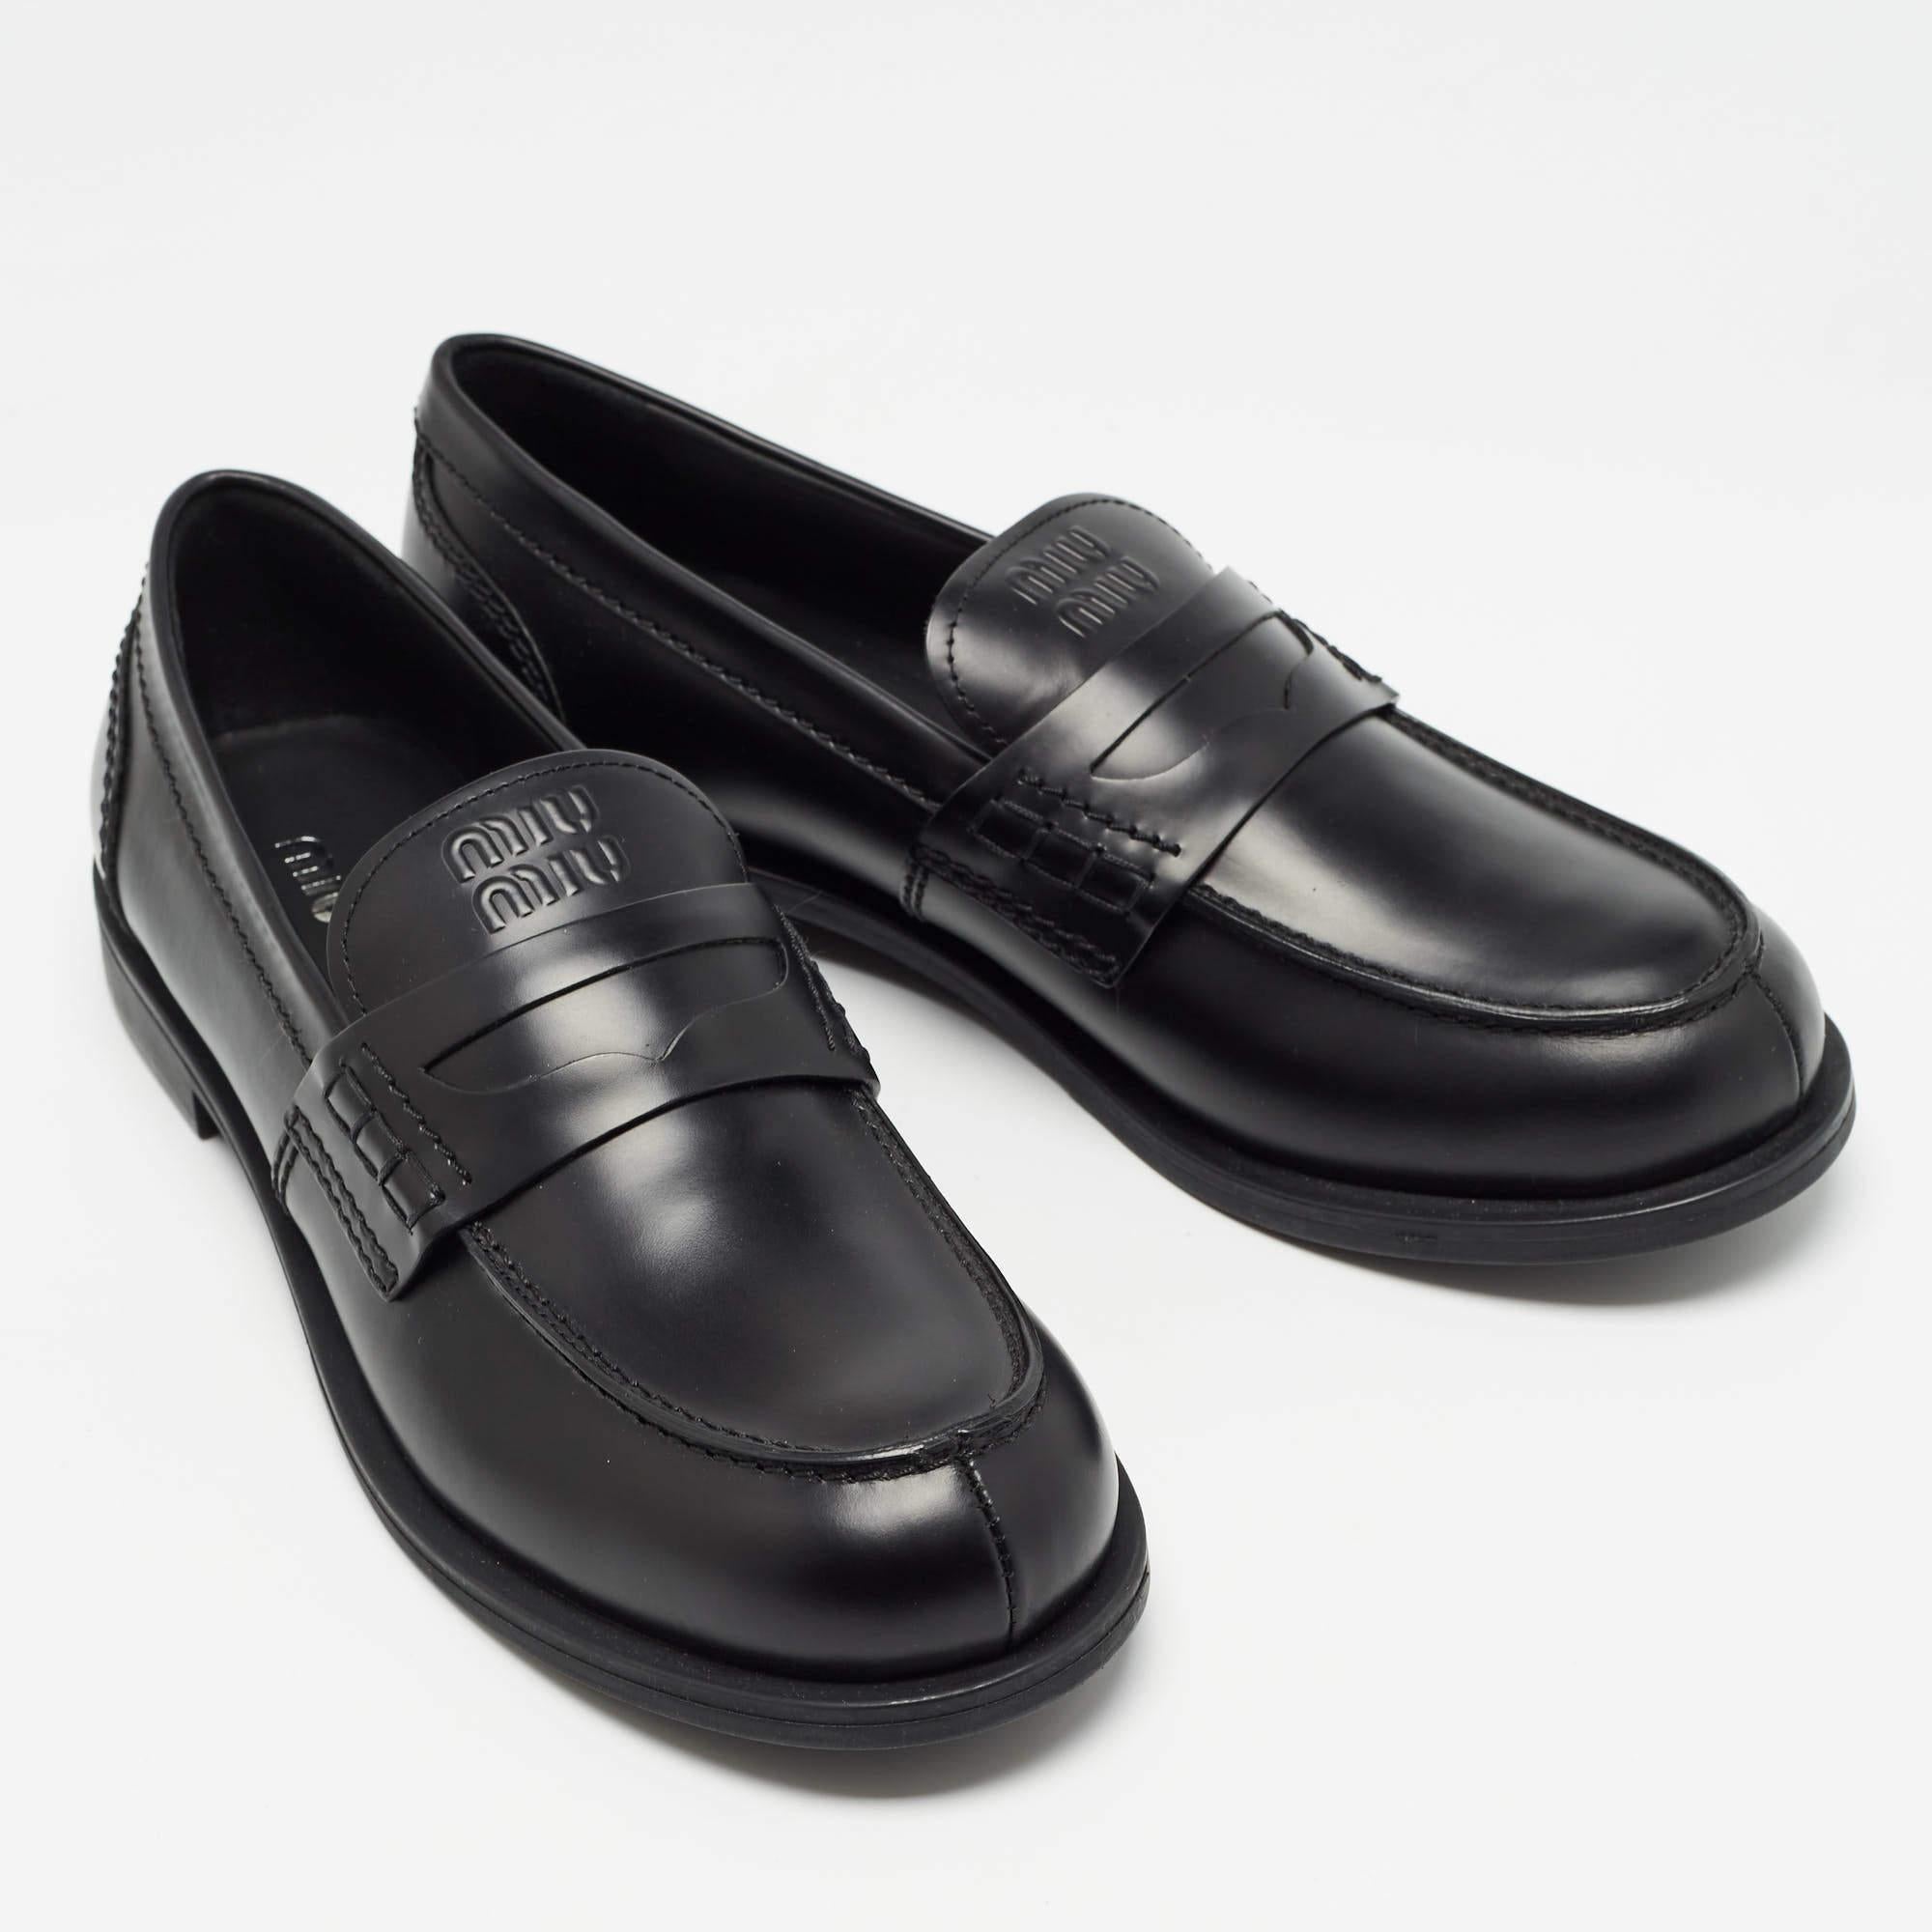 Miu Miu Black Leather Slip On Loafers Size 39.5 In New Condition For Sale In Dubai, Al Qouz 2